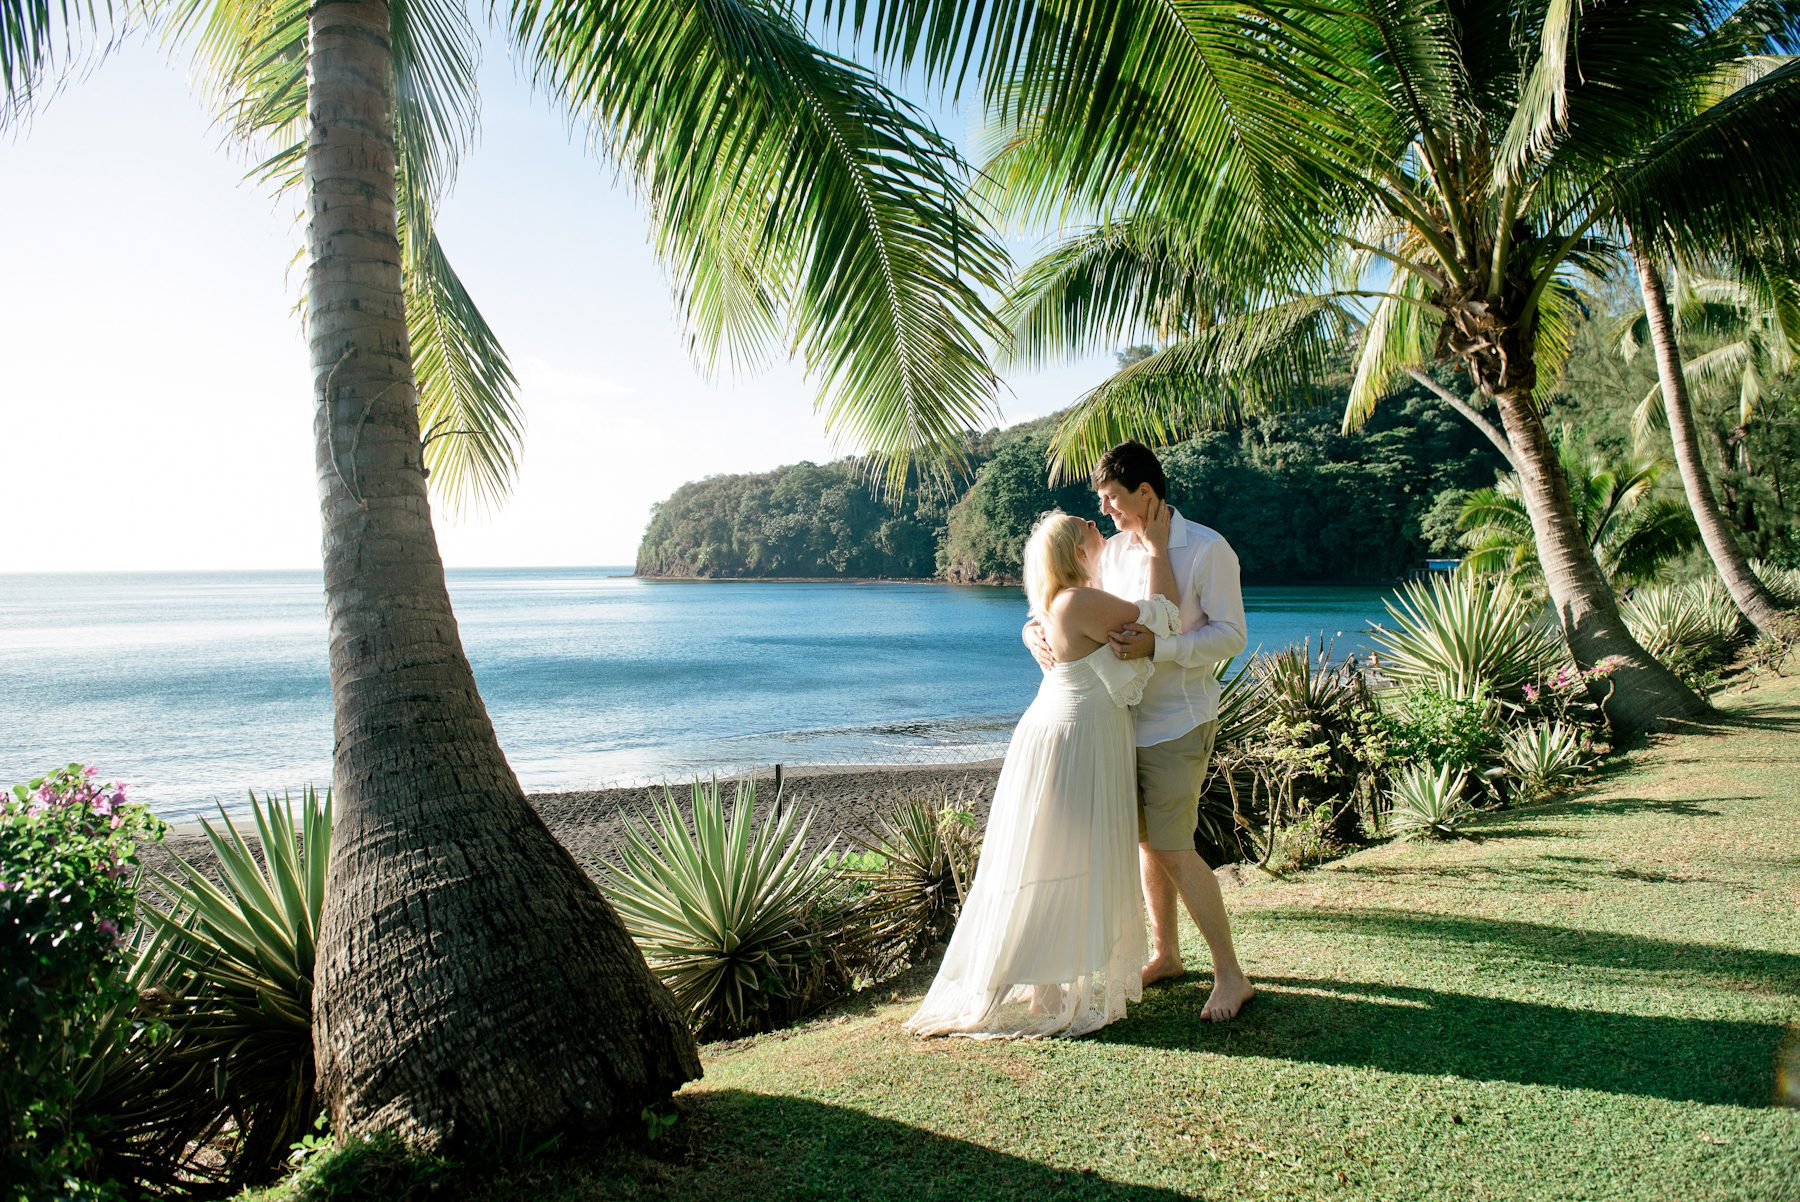 Photoshooting around the island of Tahiti